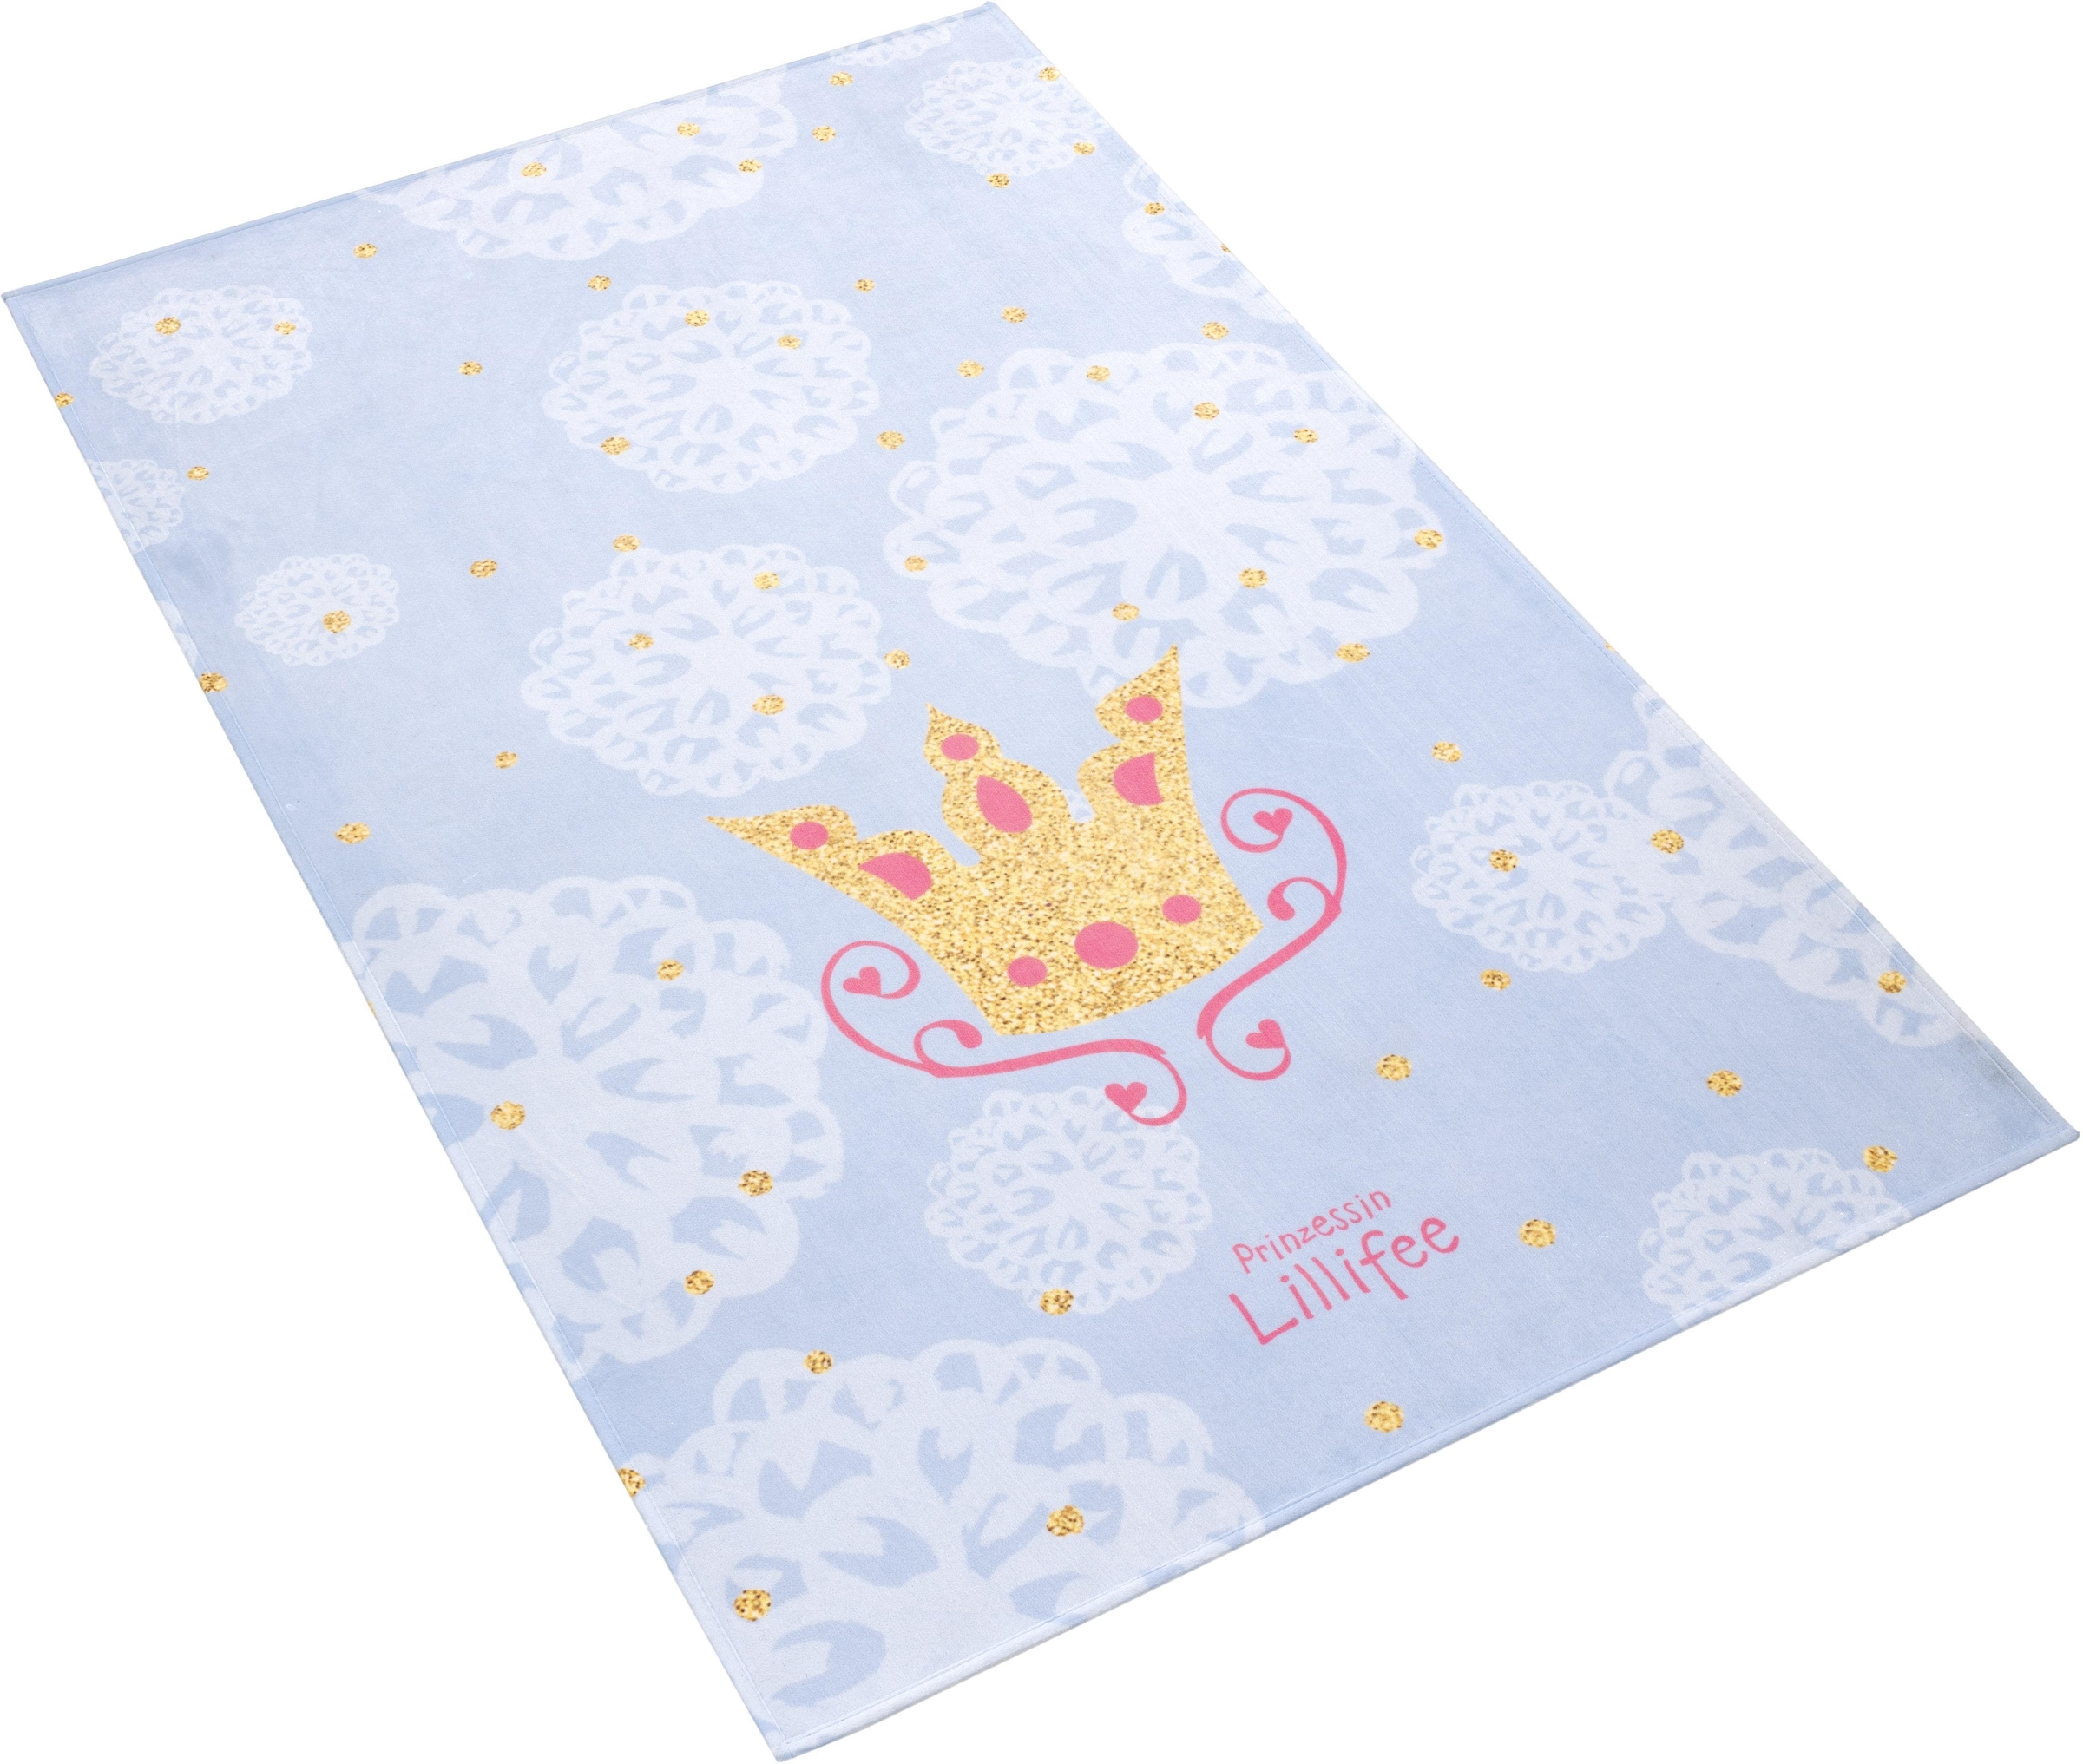 Prinzessin Lillifee Kinderteppich »LI-114«, rechteckig, bedruckter Stoff, Motiv Krone, weiche Microfaser, Kinderzimmer